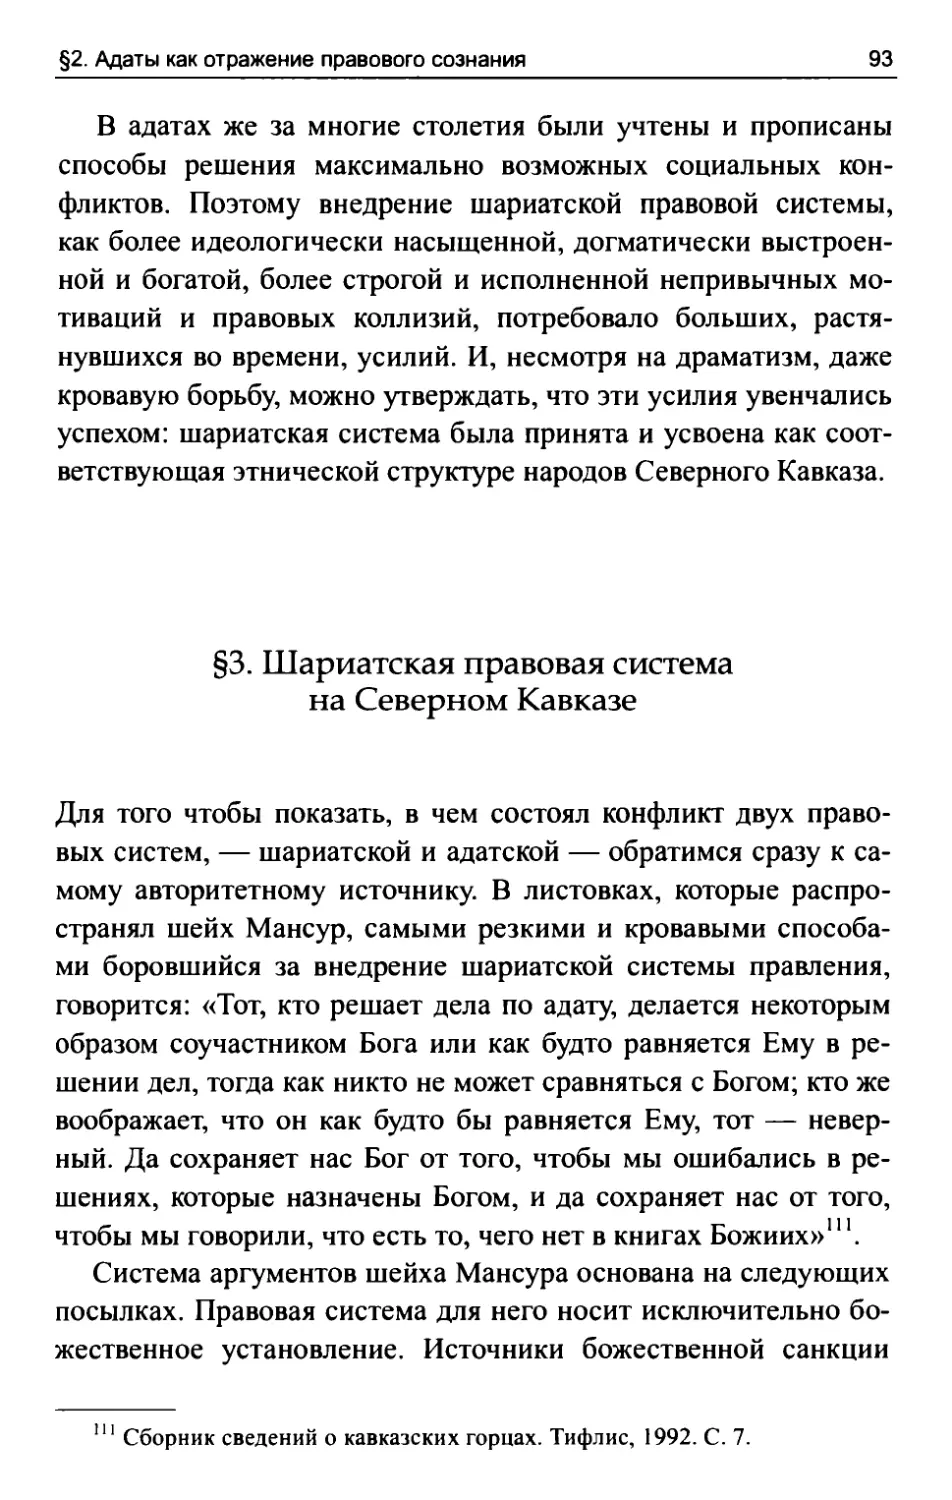 §3. Шариатская правовая система на Северном Кавказе